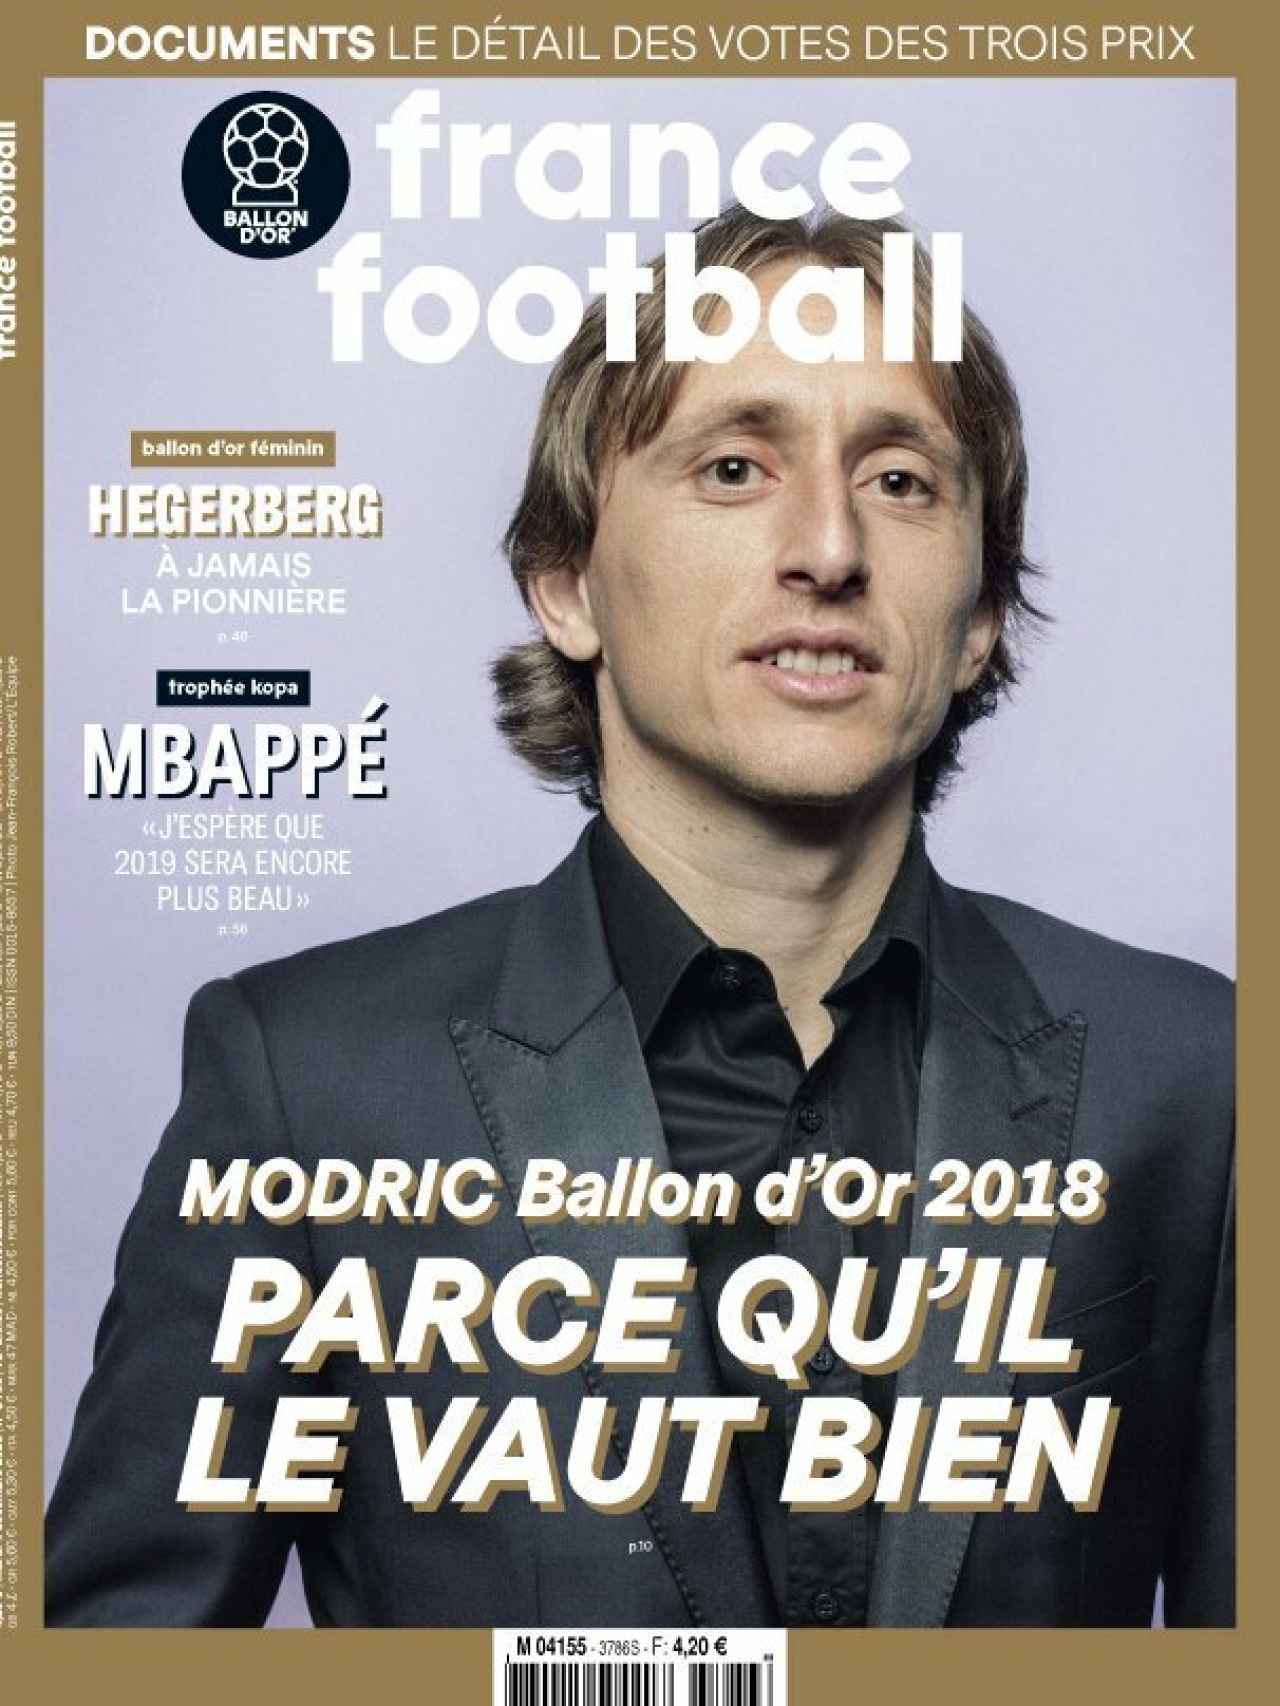 La portada del France Football (04/12/2018)